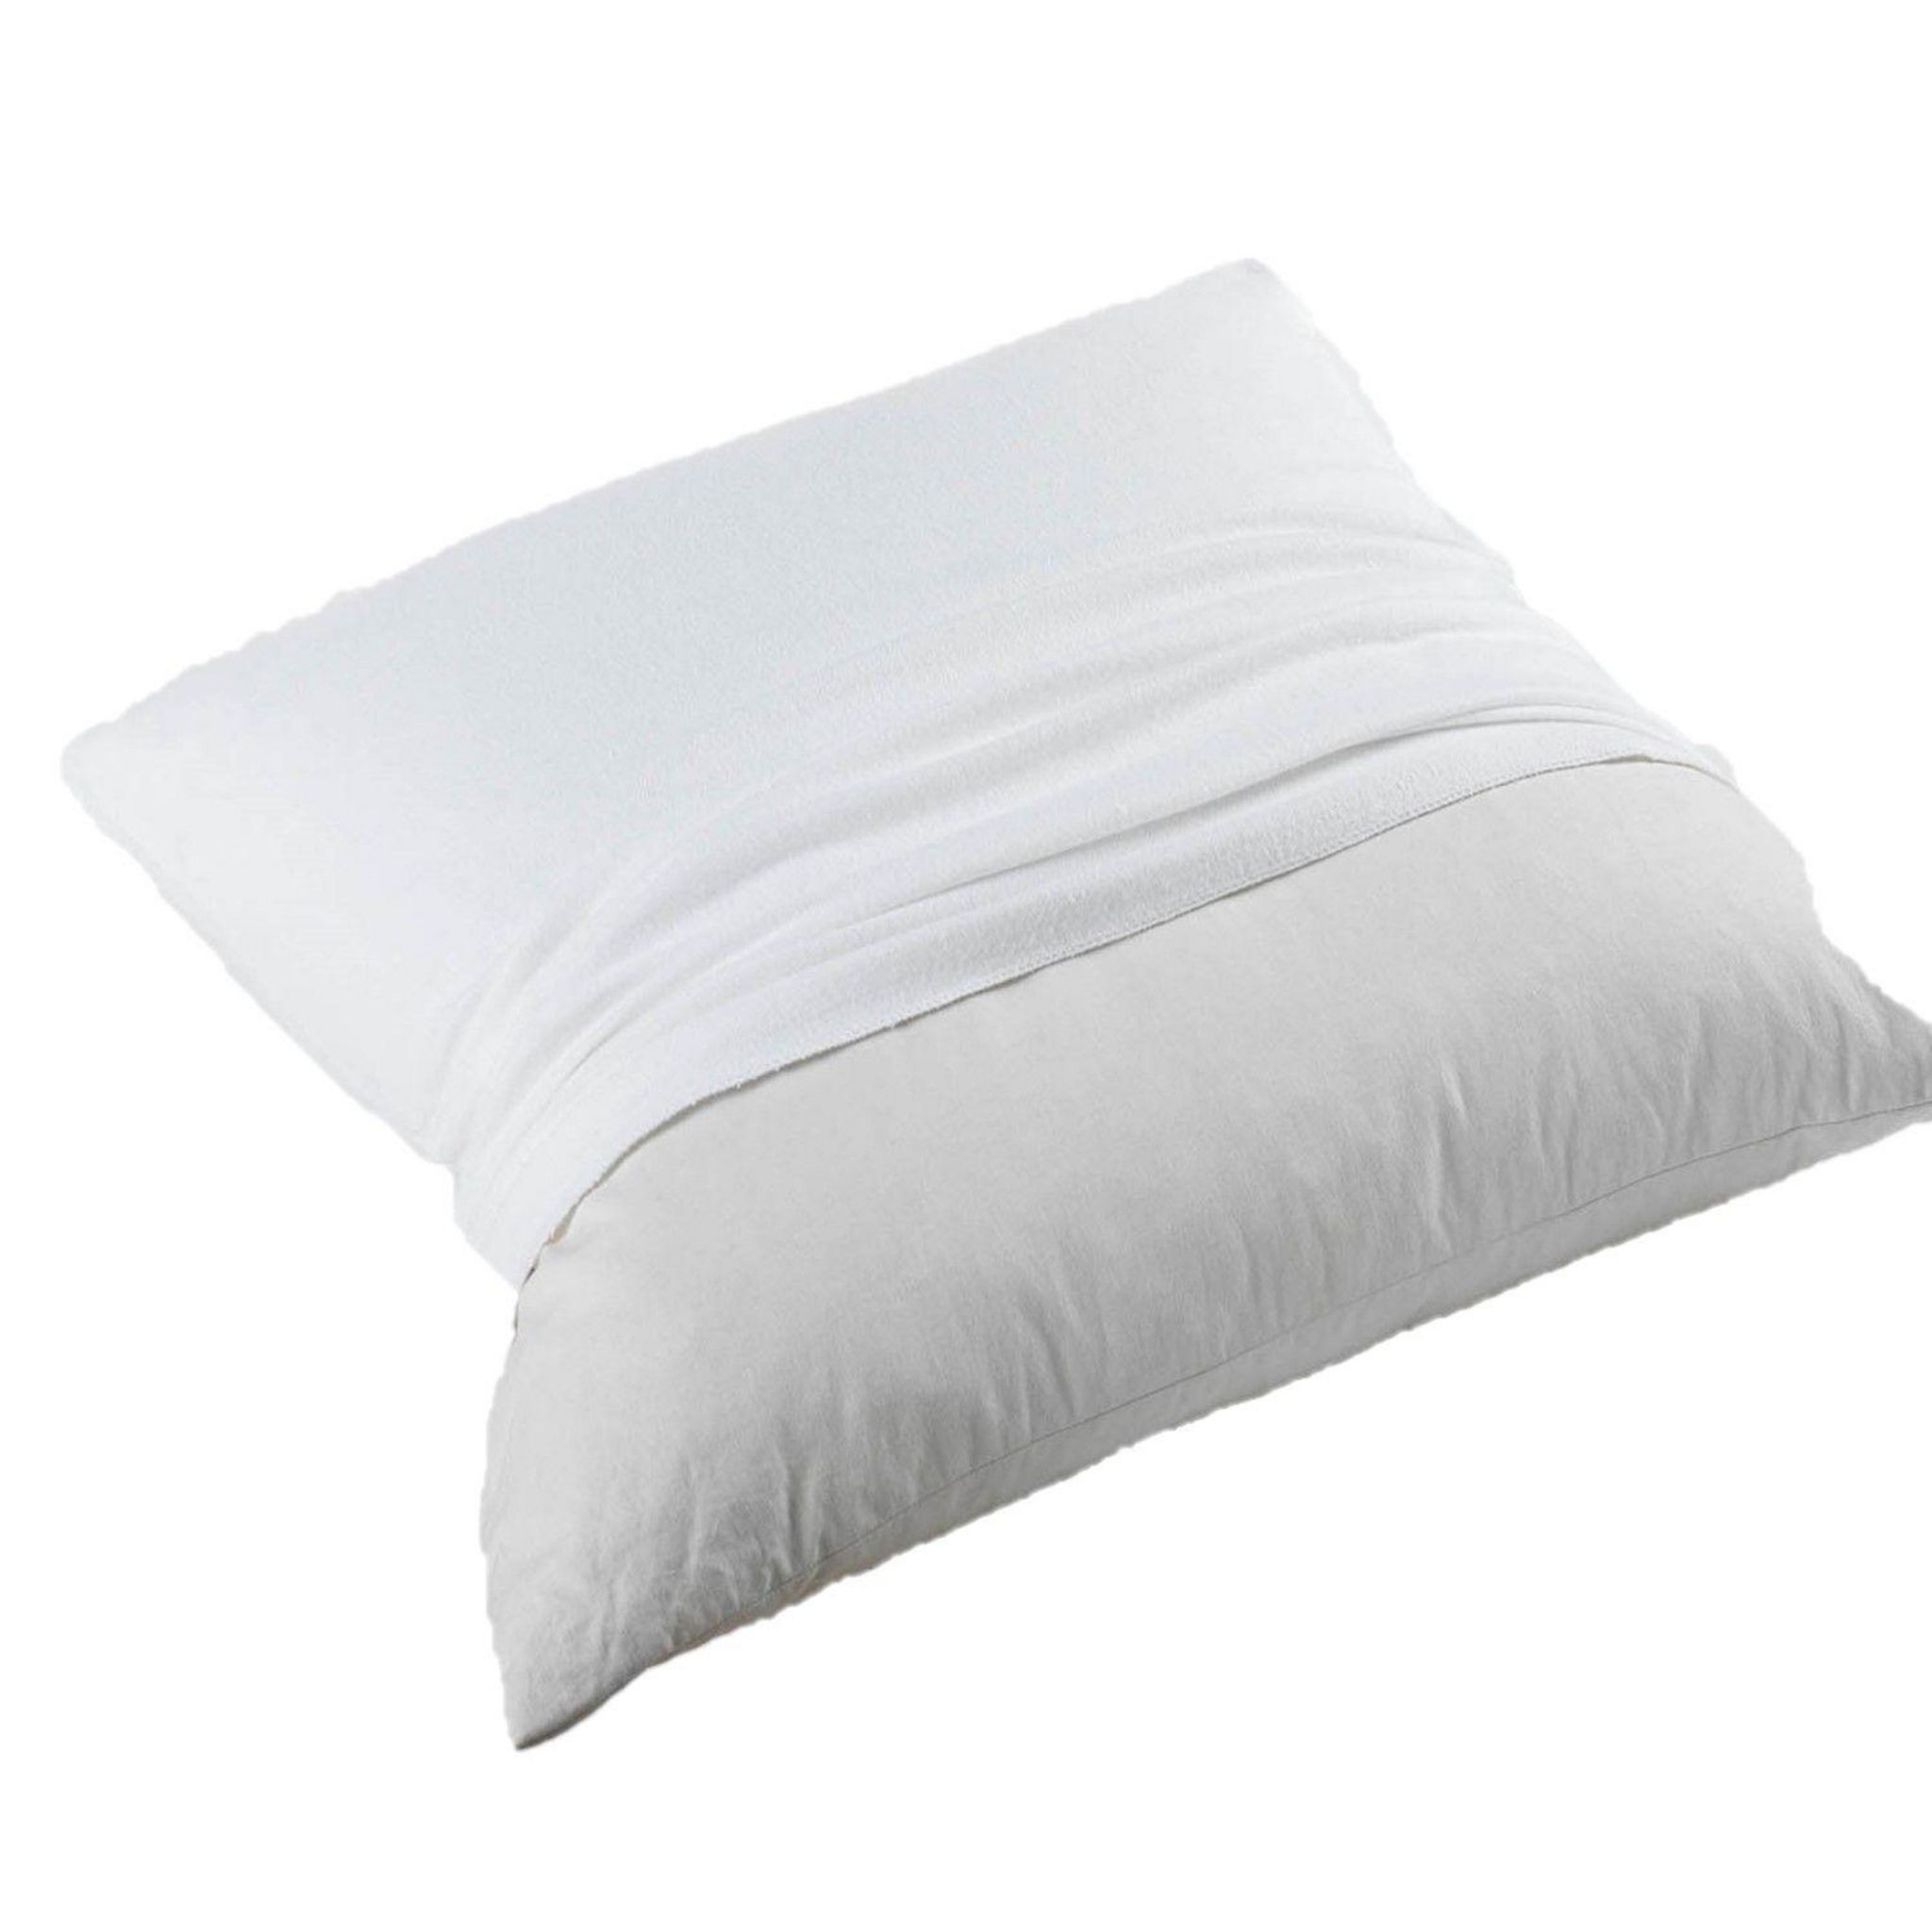 2 protege oreillers pur coton coloris blanc Molleton blanc